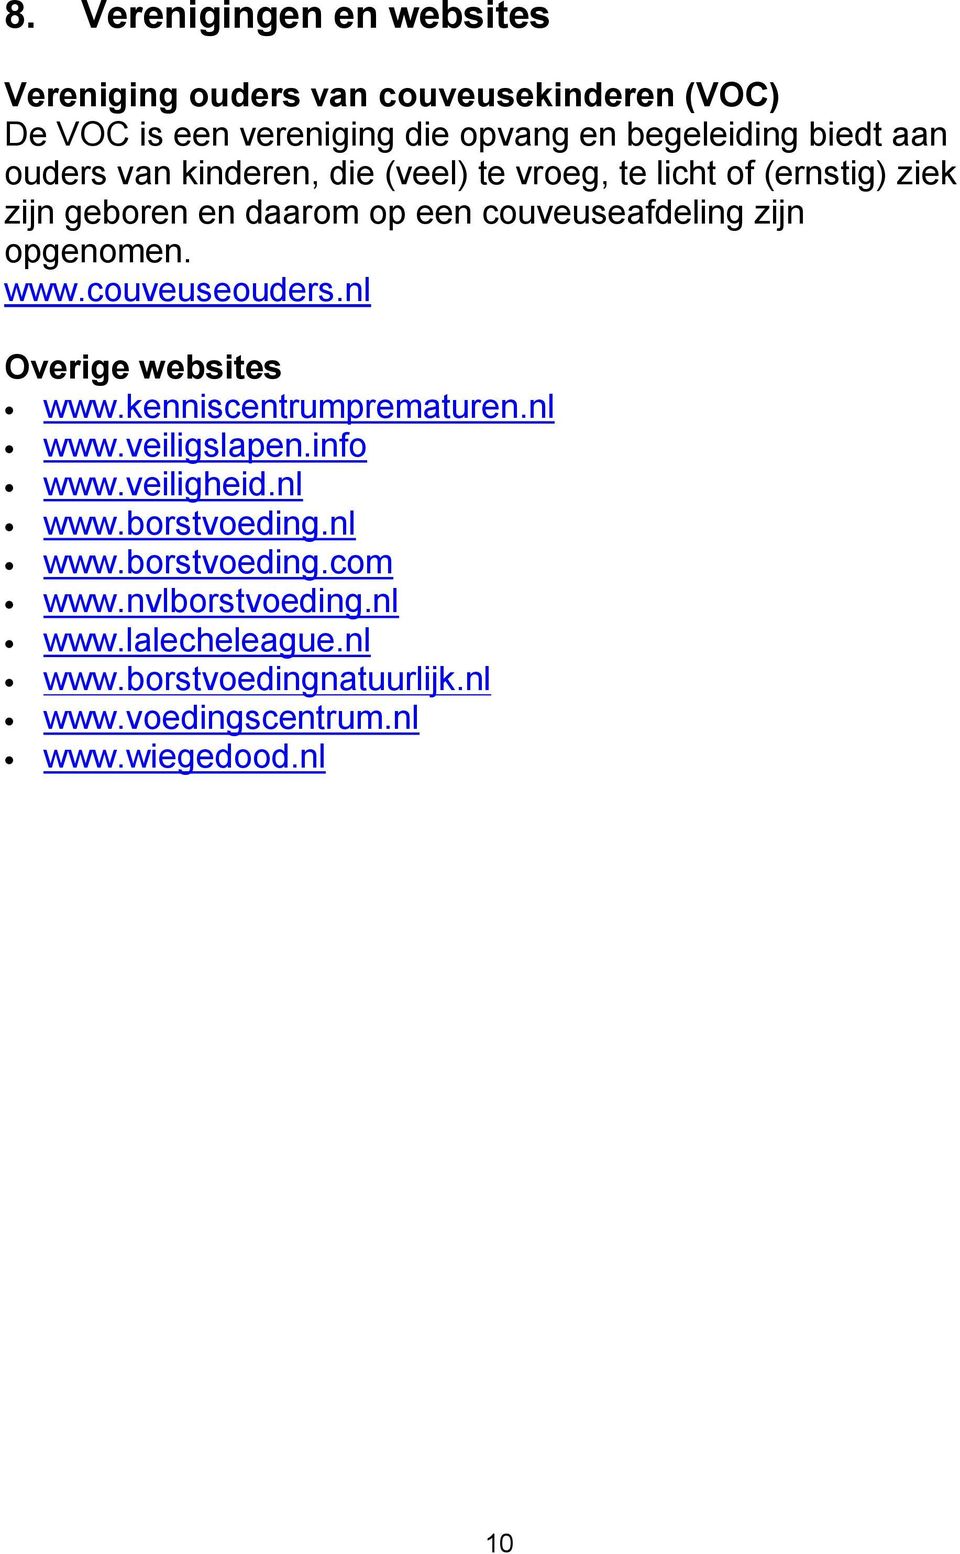 www.couveuseouders.nl Overige websites www.kenniscentrumprematuren.nl www.veiligslapen.info www.veiligheid.nl www.borstvoeding.